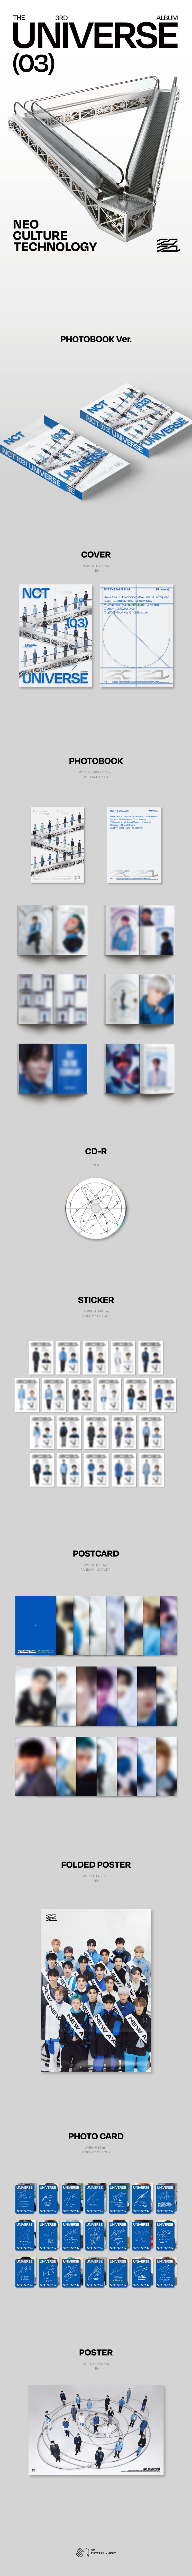 [NCT] 3rd Album [Universe] contents